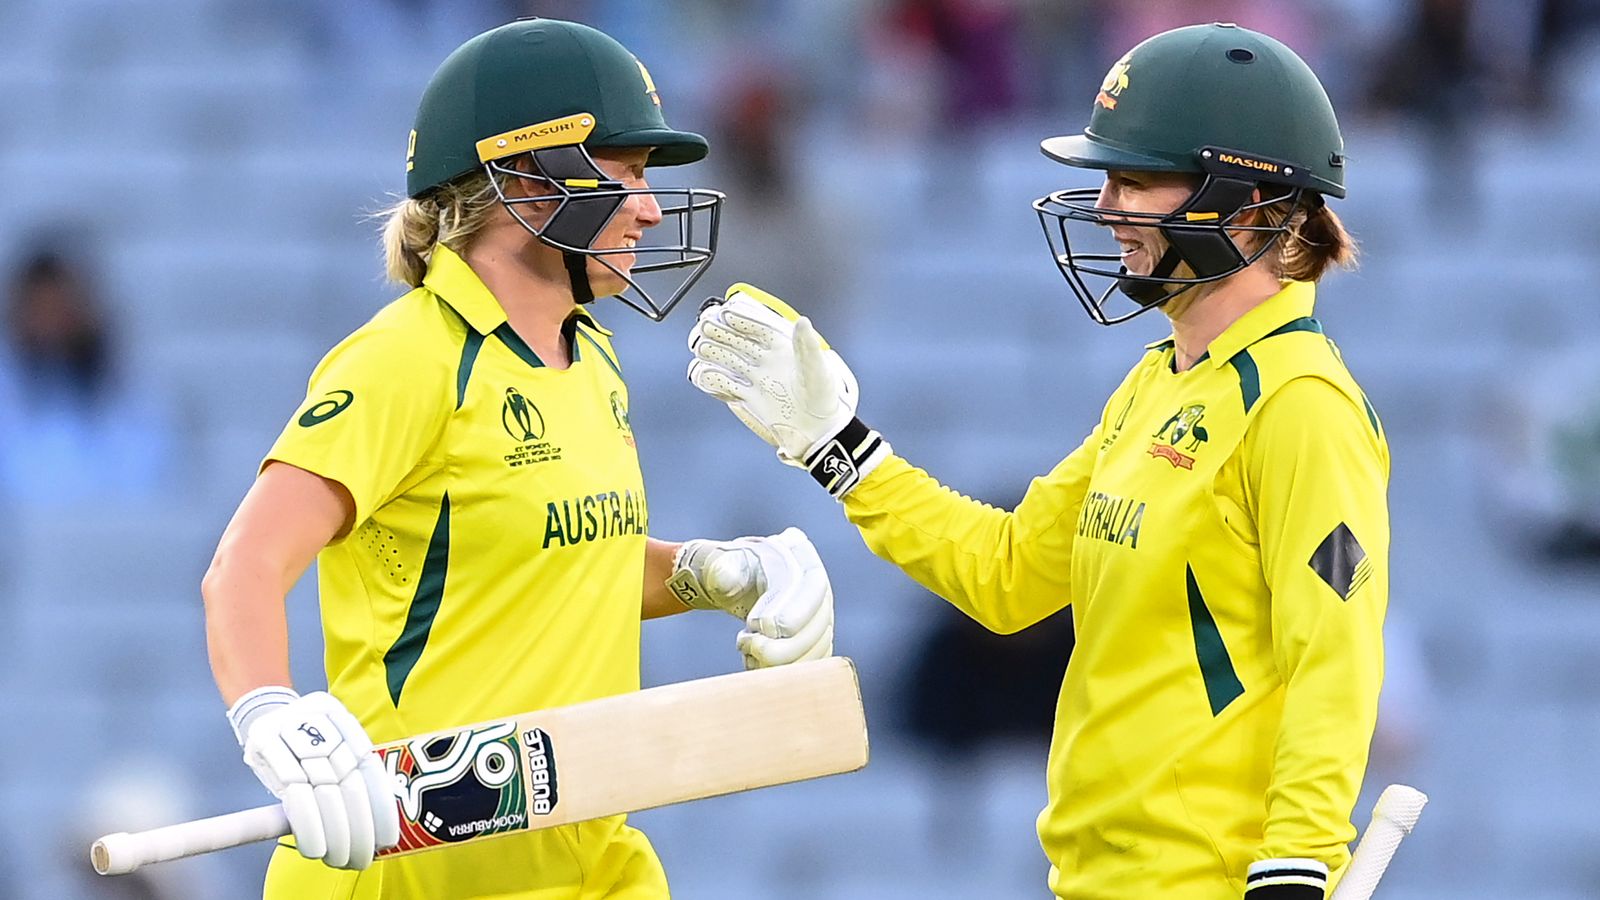 Coupe du monde de cricket féminin : l’Australie a battu l’Inde pour atteindre les demi-finales avec Meg Lanning marquant 97 |  Nouvelles du cricket